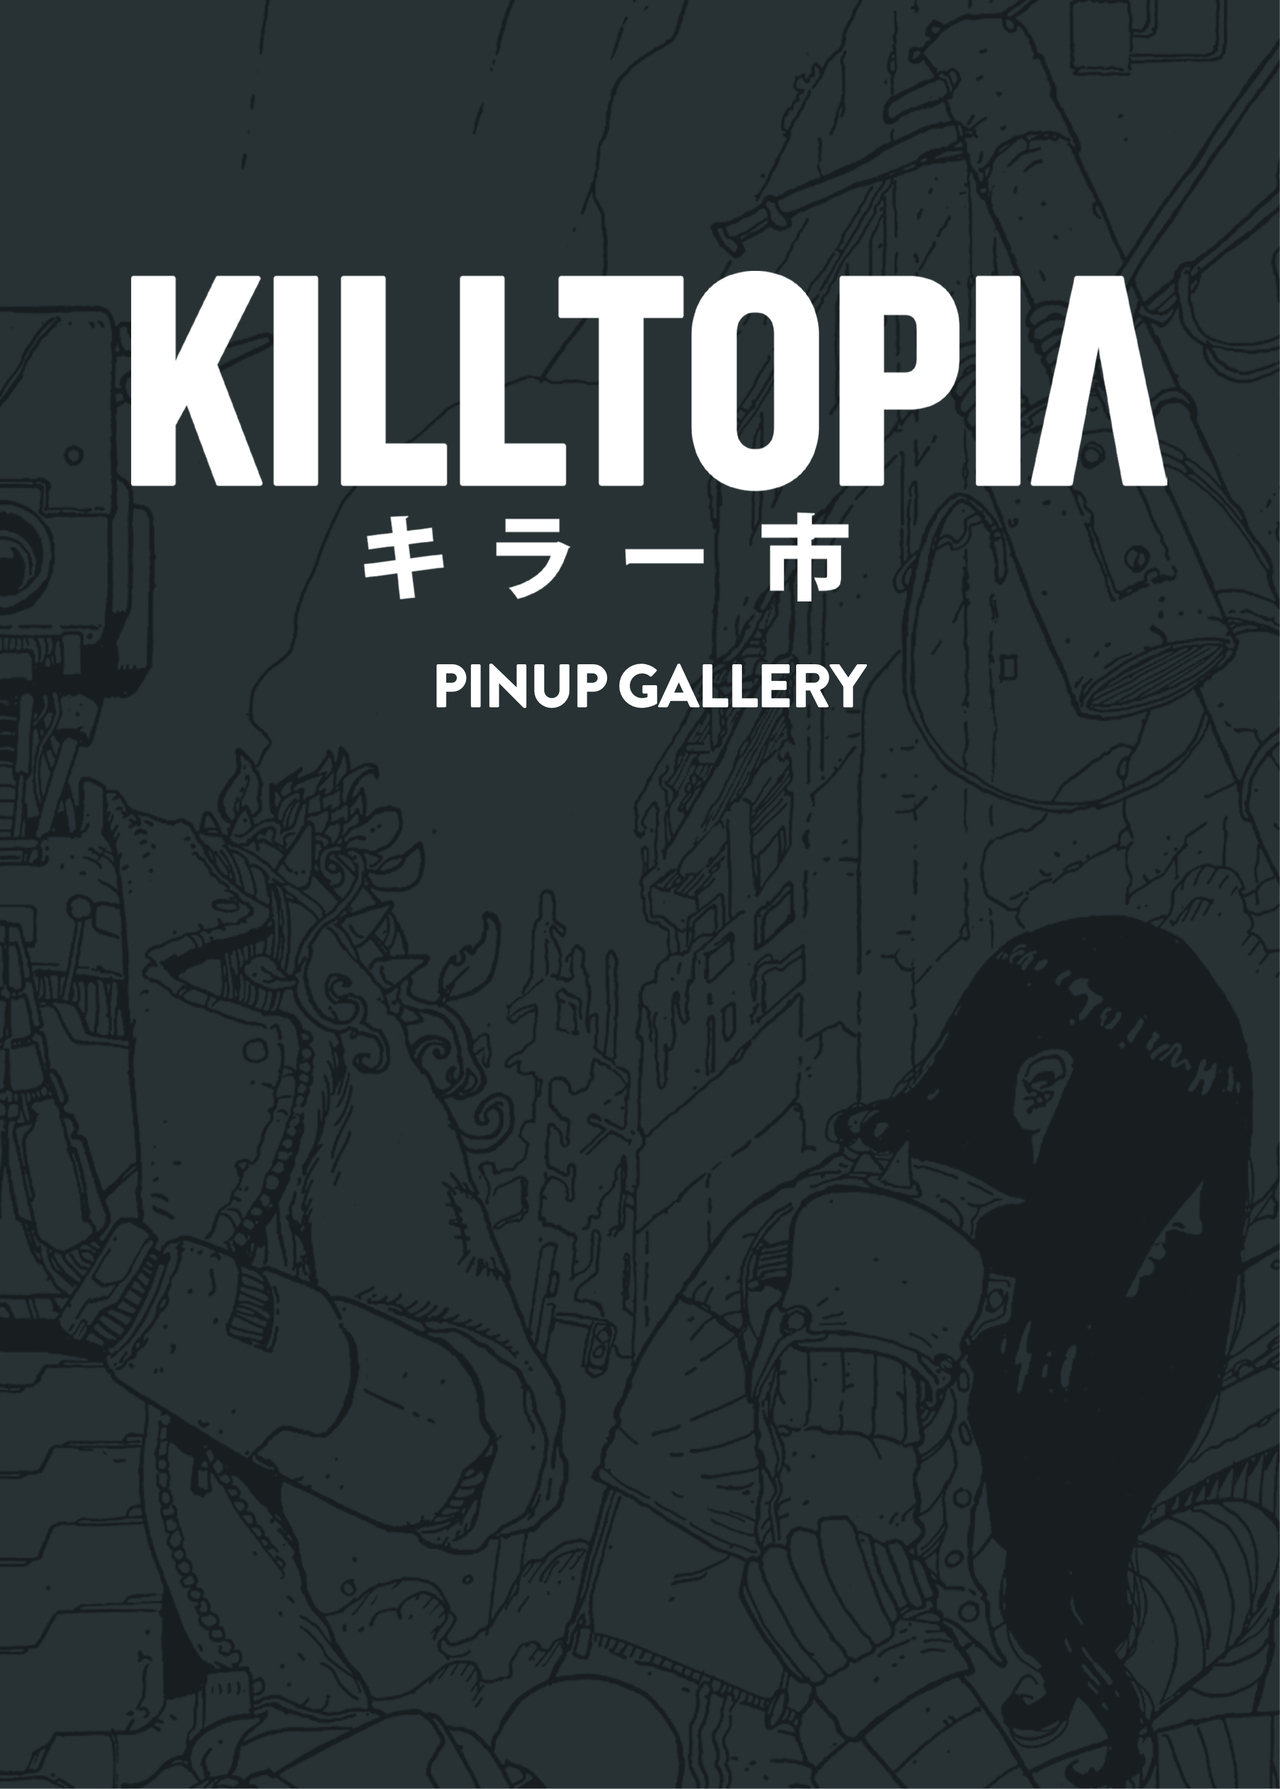 Read online Killtopia comic -  Issue #3 - 59